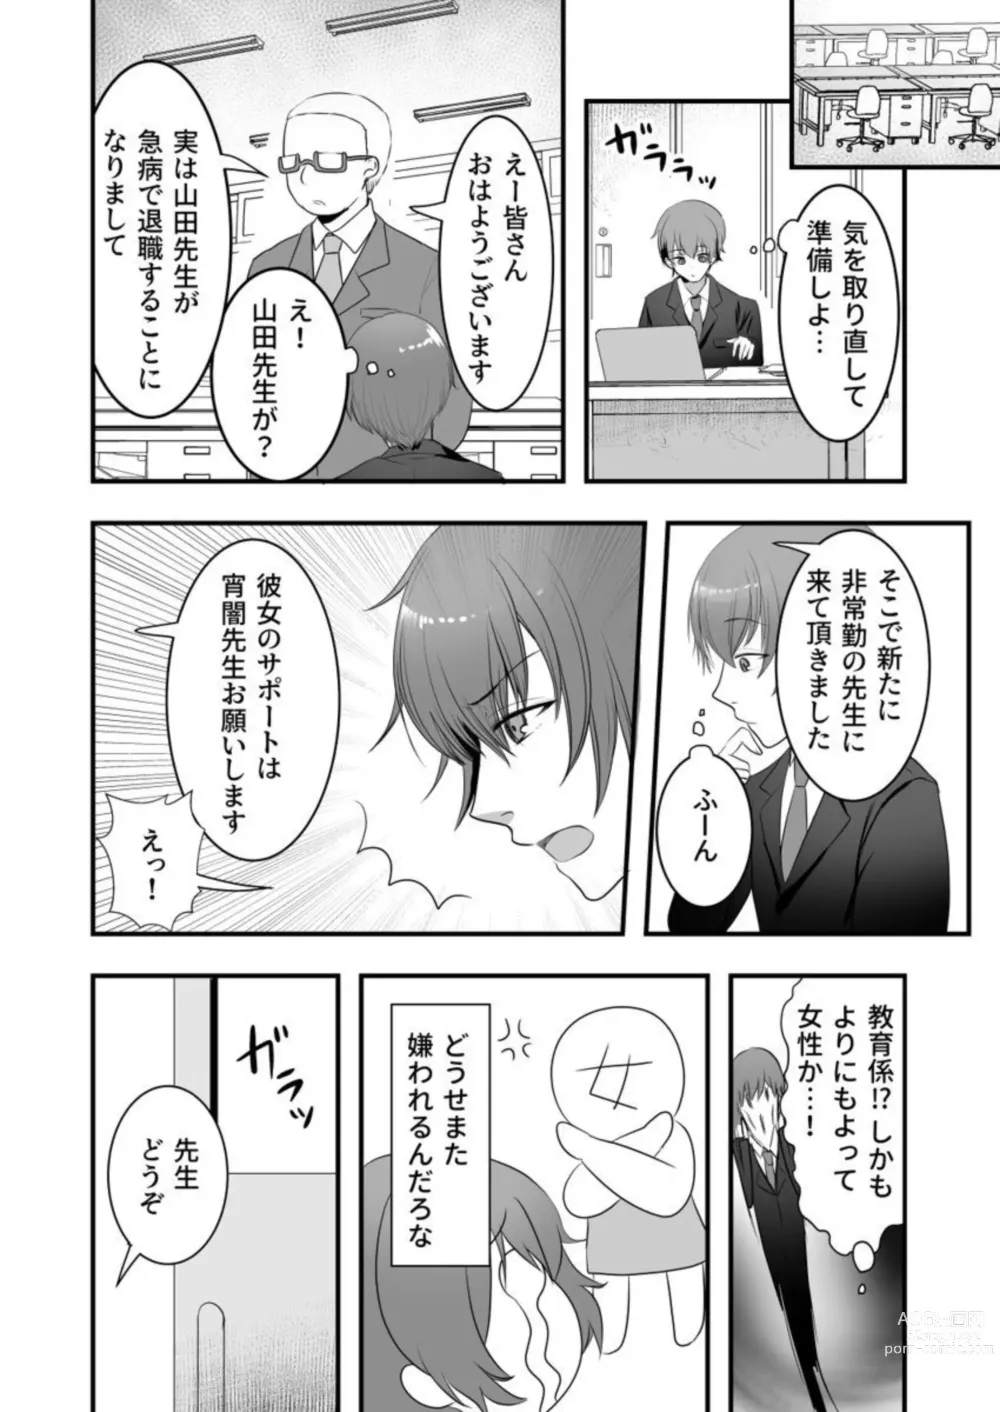 Page 5 of manga Ayakashi Shibori ~ Gokujō no sei wa 胎 No Naka ni 1